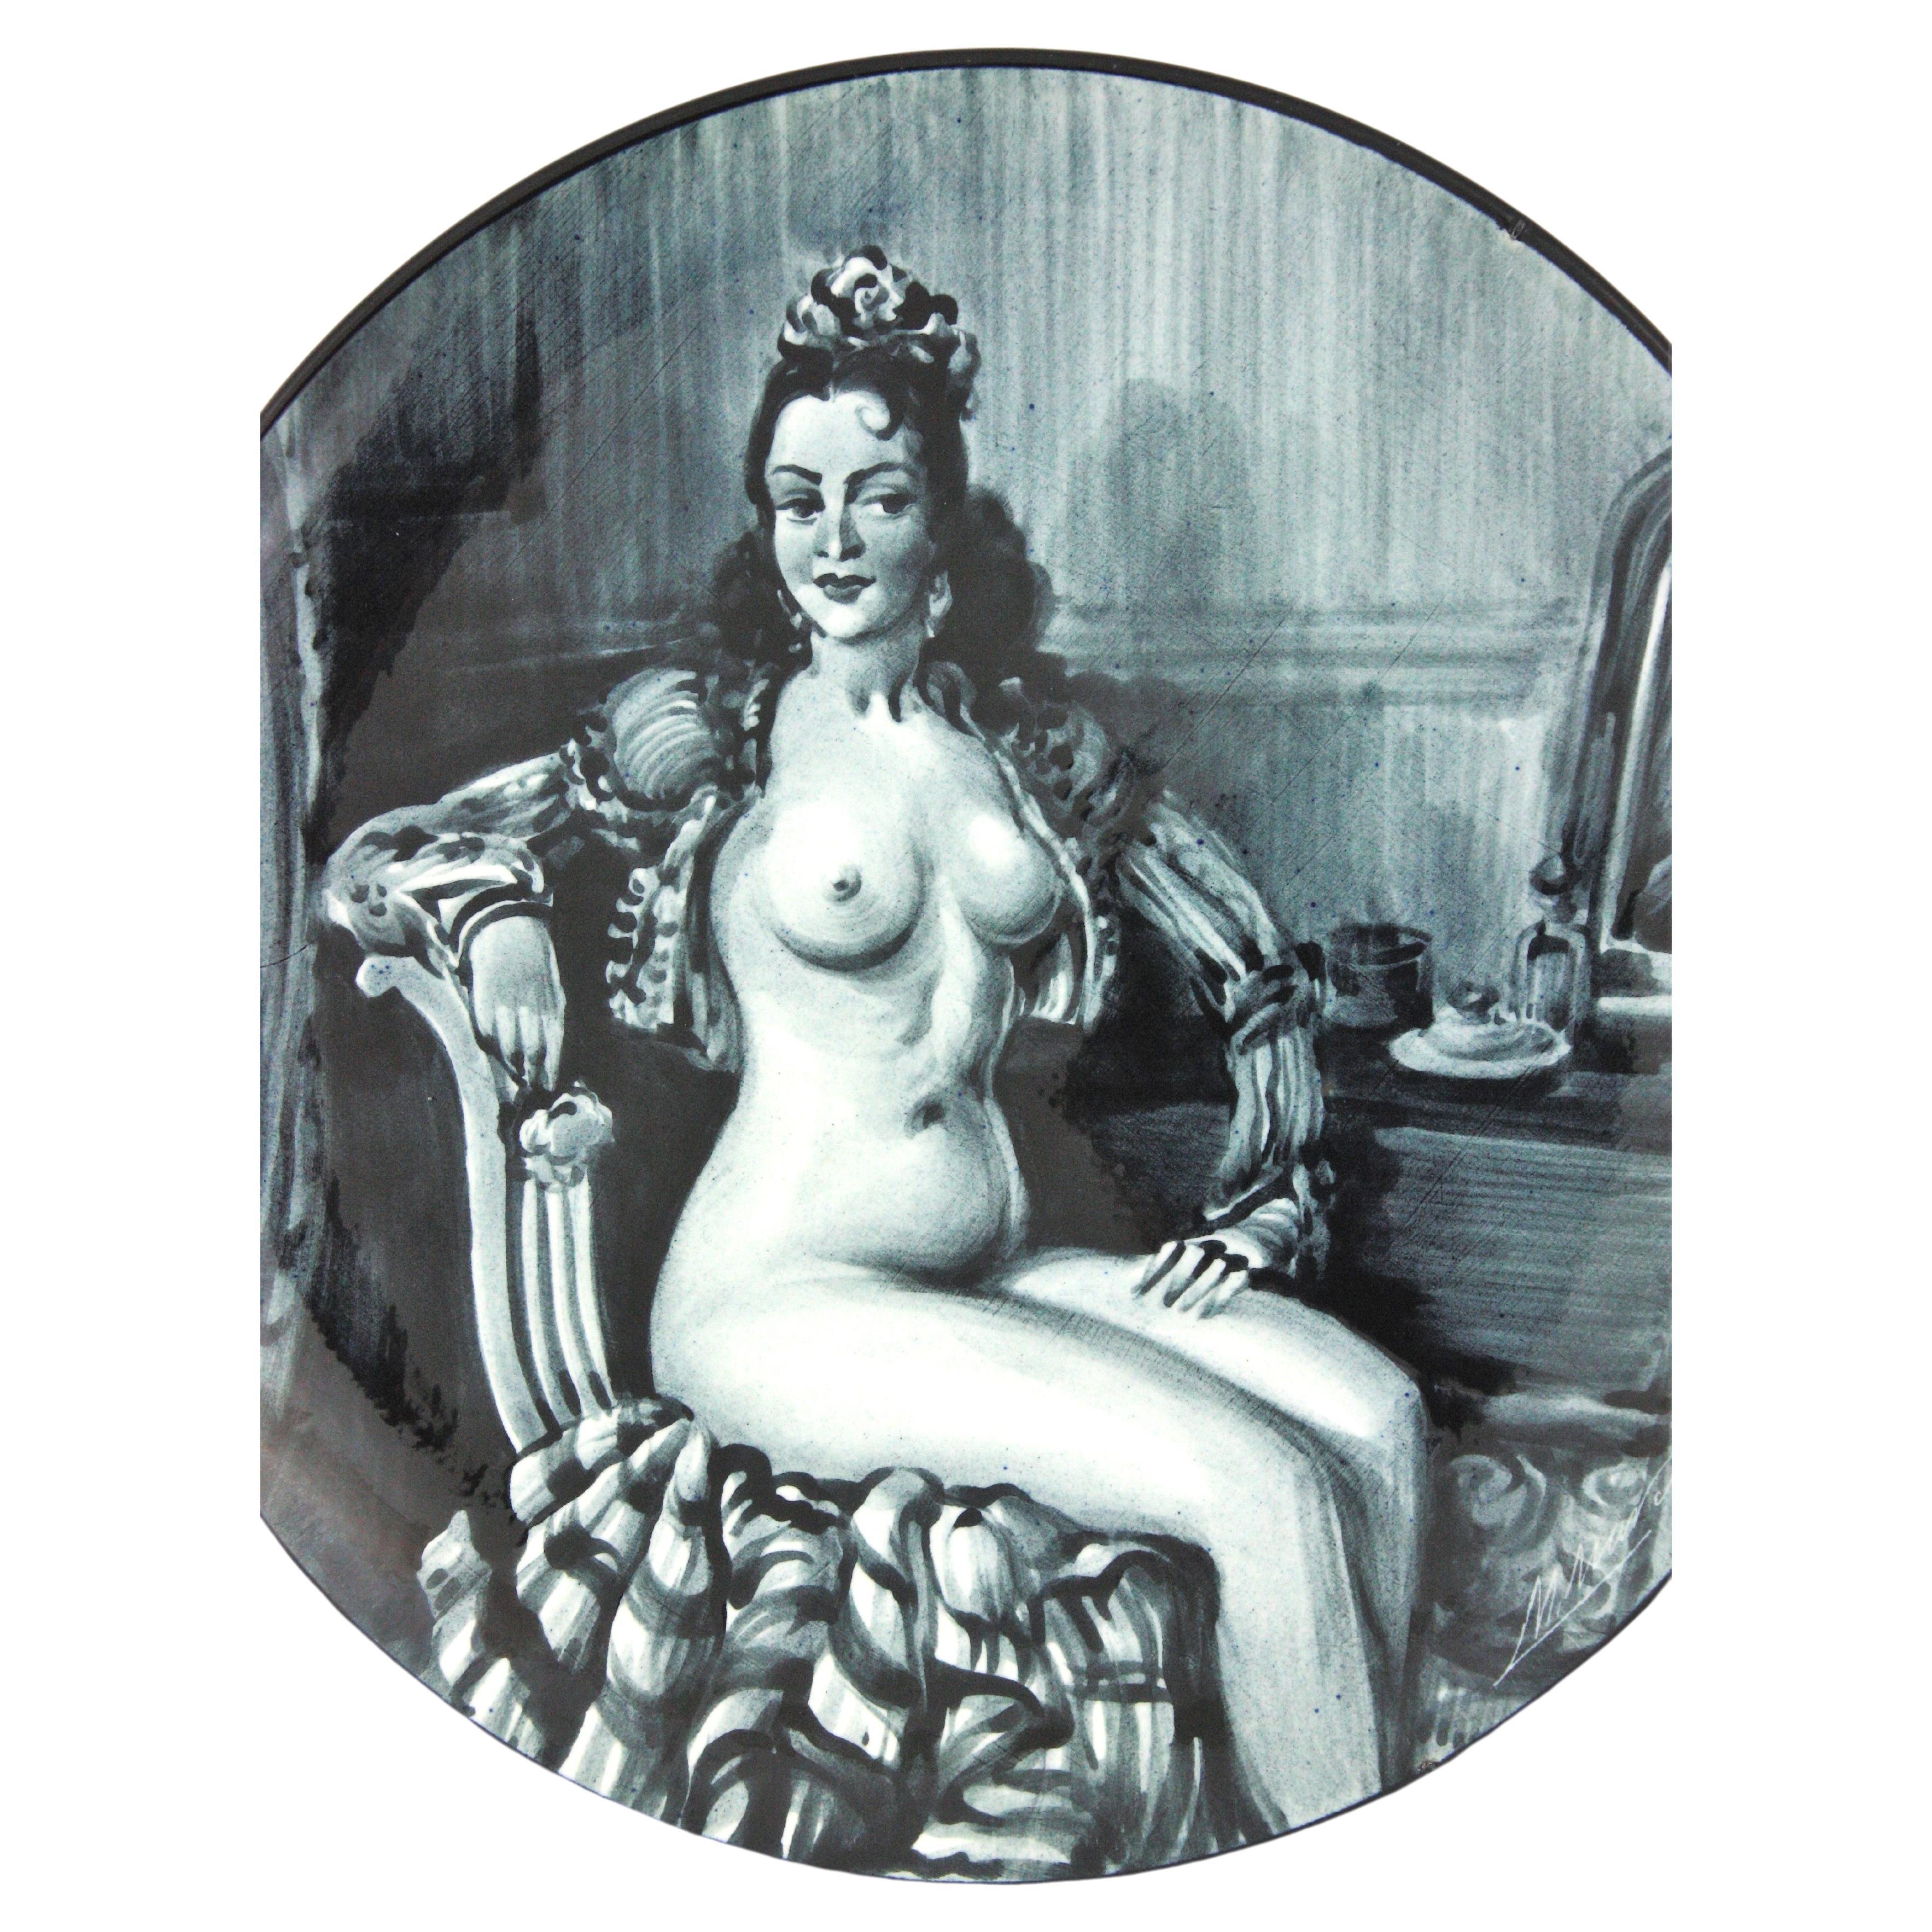 Handbemalte nackte Frau dekorativer Wandteller, glasierte Keramik,  Spanien, 1950er Jahre
Spanische andalusische Nackttänzerin in schwarzen und weißen Farben.
Signiert M Marco unten rechts.
Auf der Rückseite steht: 